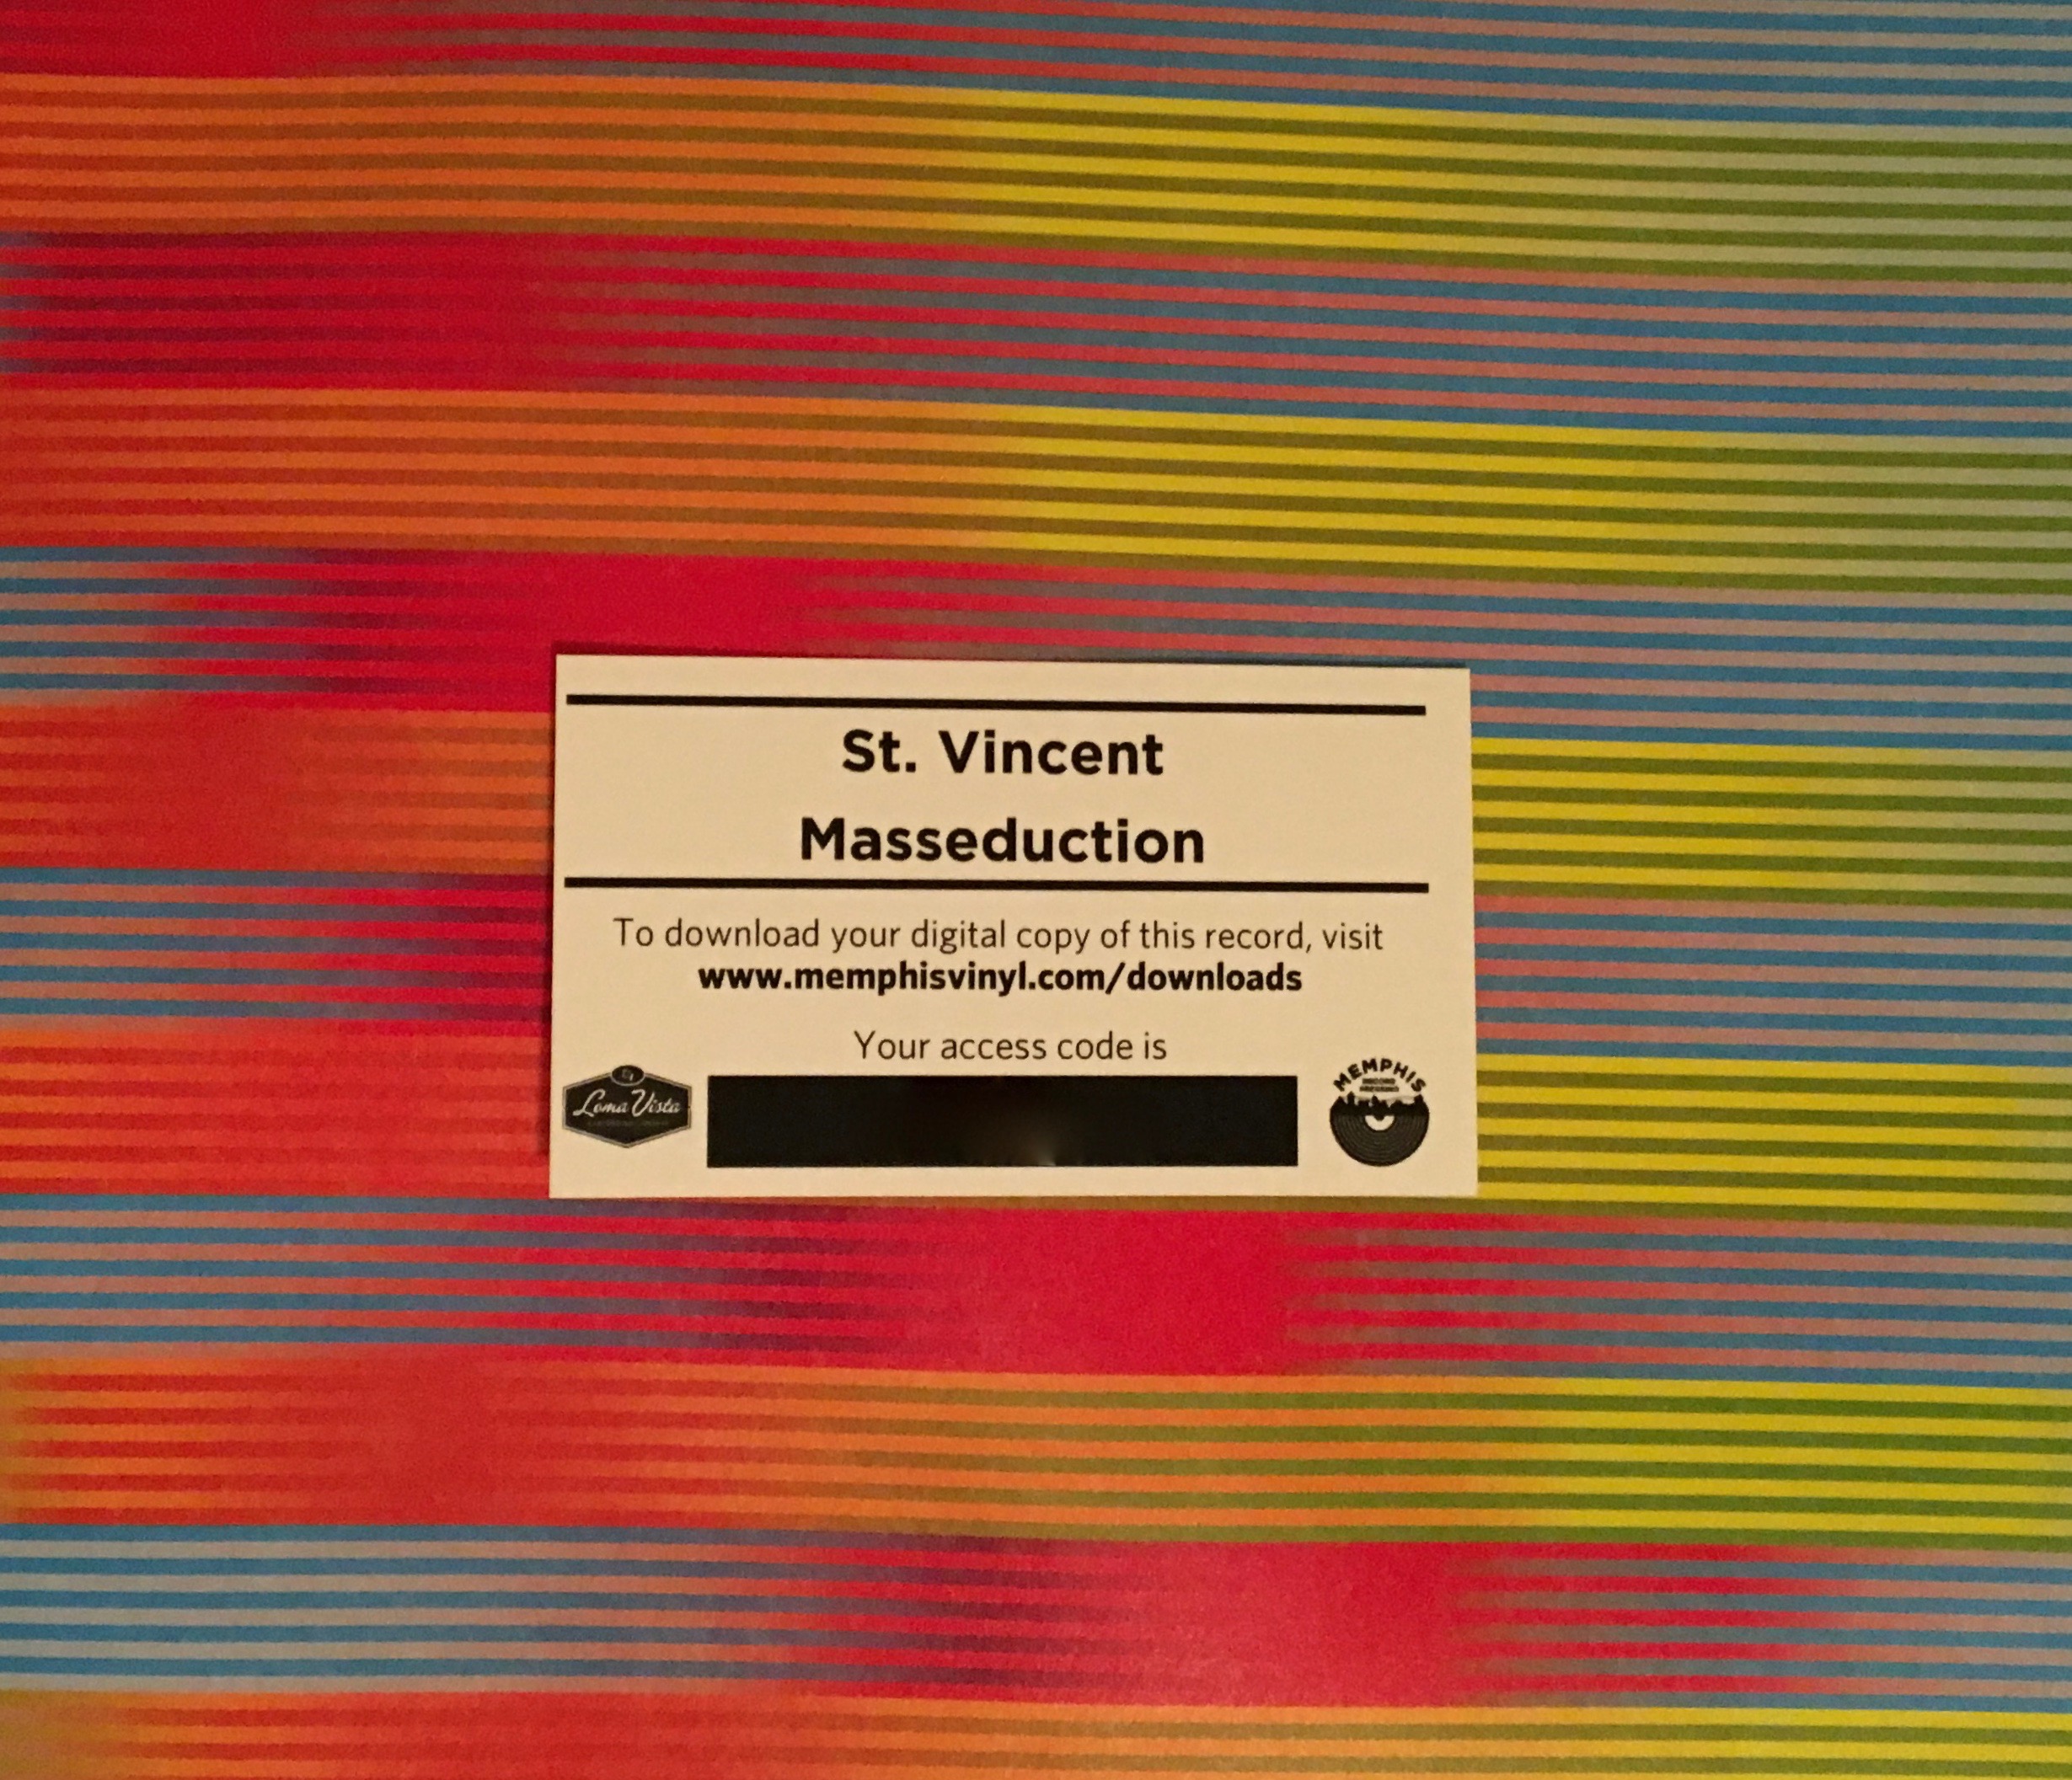 Geek insider, geekinsider, geekinsider. Com,, vinyl me, please november edition: st. Vincent 'masseduction', entertainment